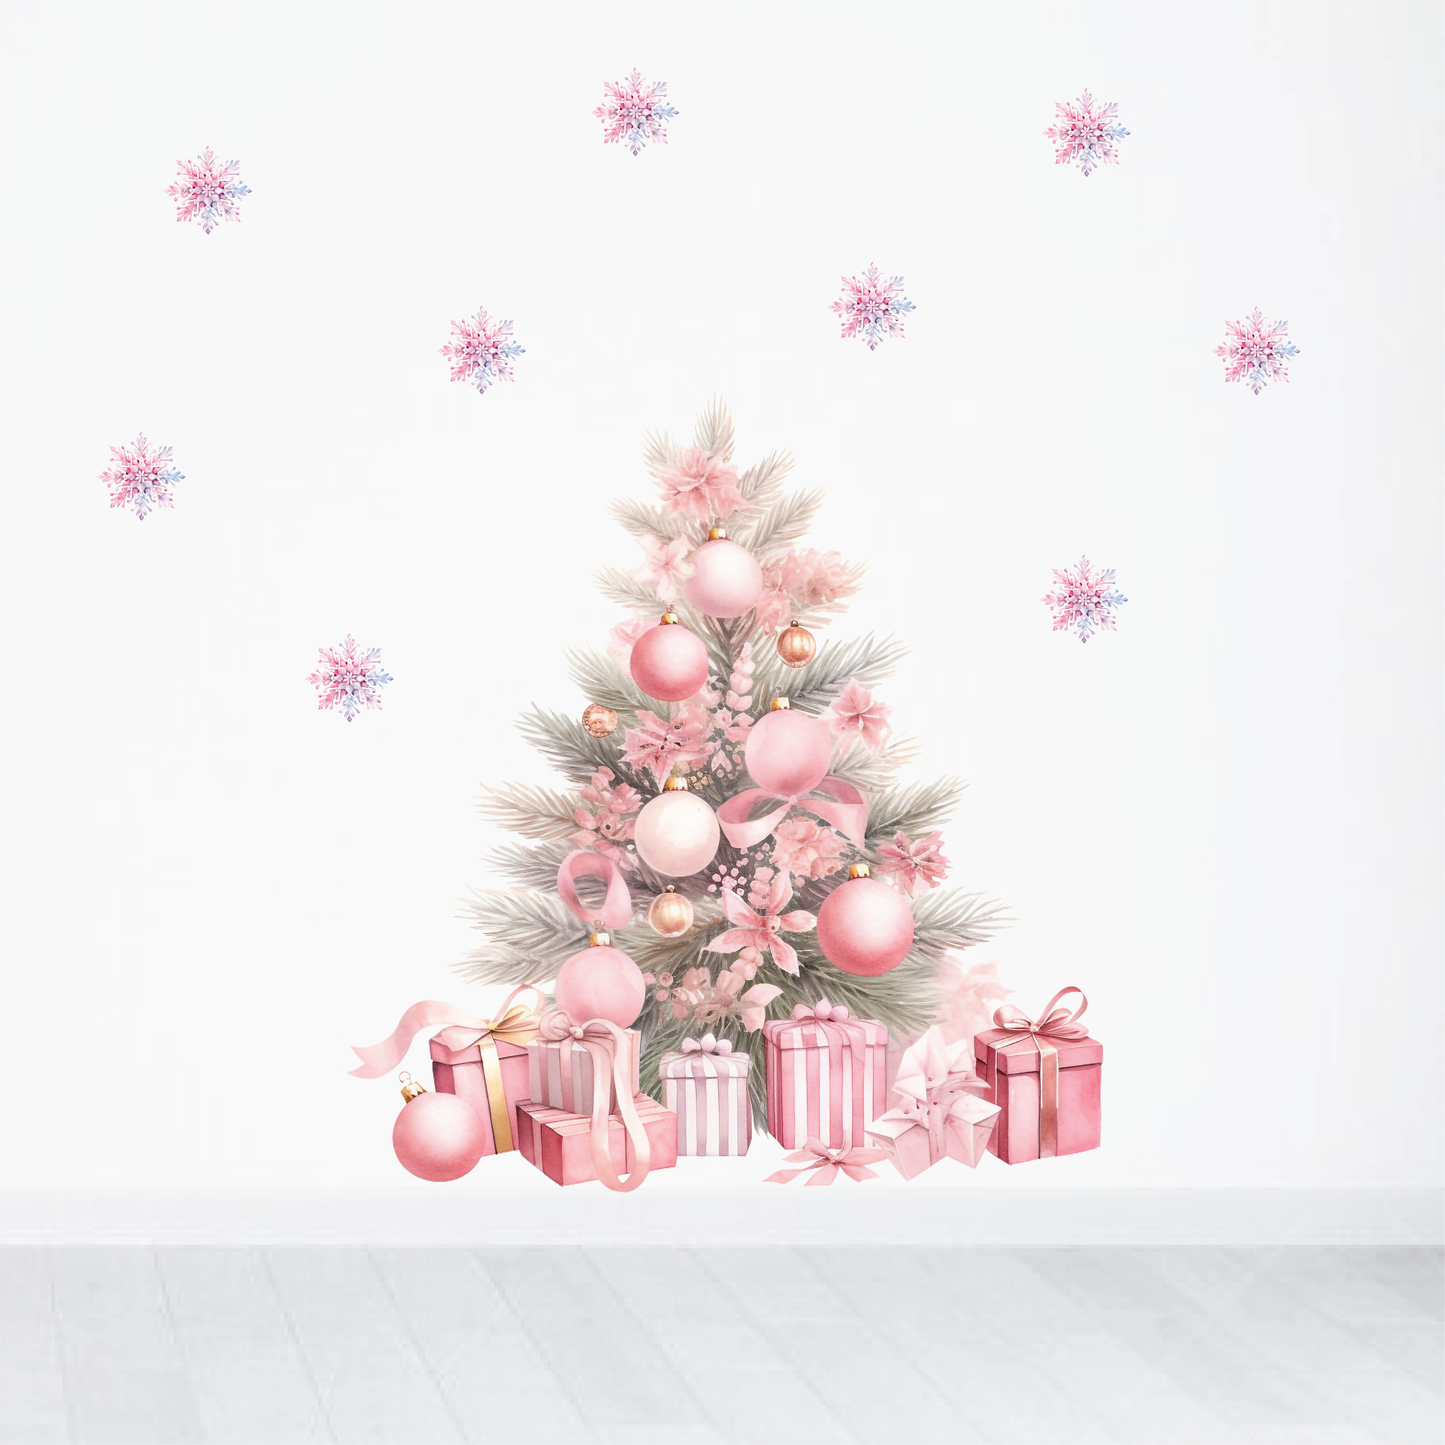 Pink Christmas Tree Wall Decal Set